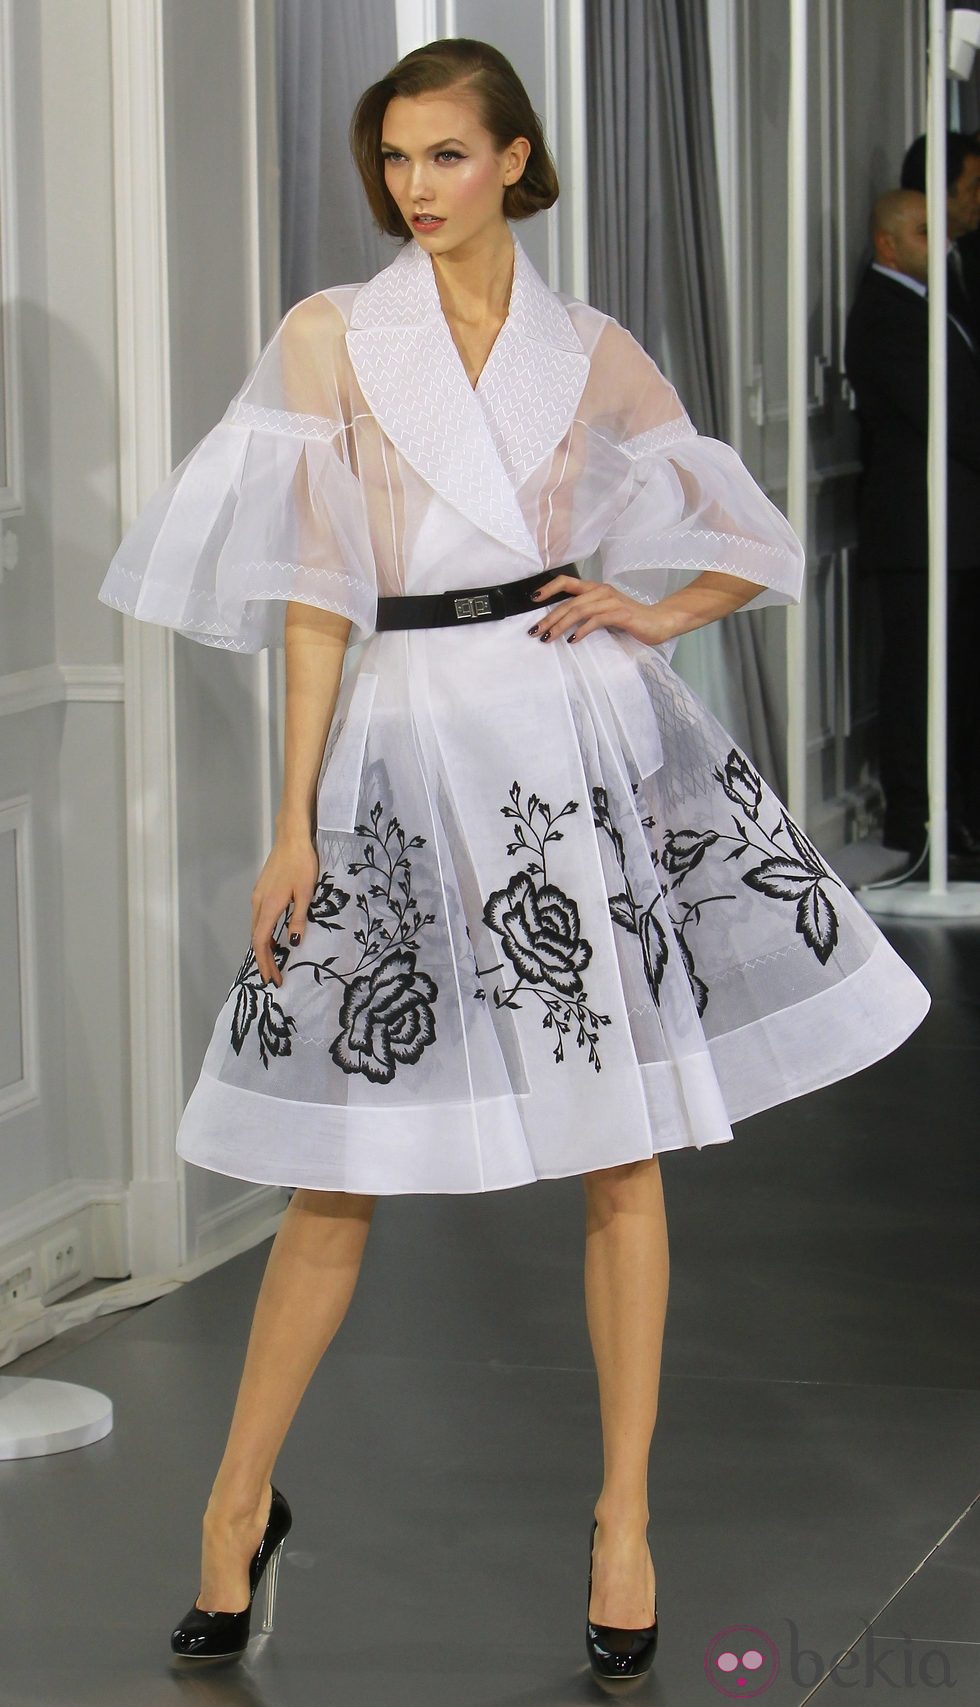 Diseño new look de tul blanco con bordados florales en negro de Christian Dior Alta Costura